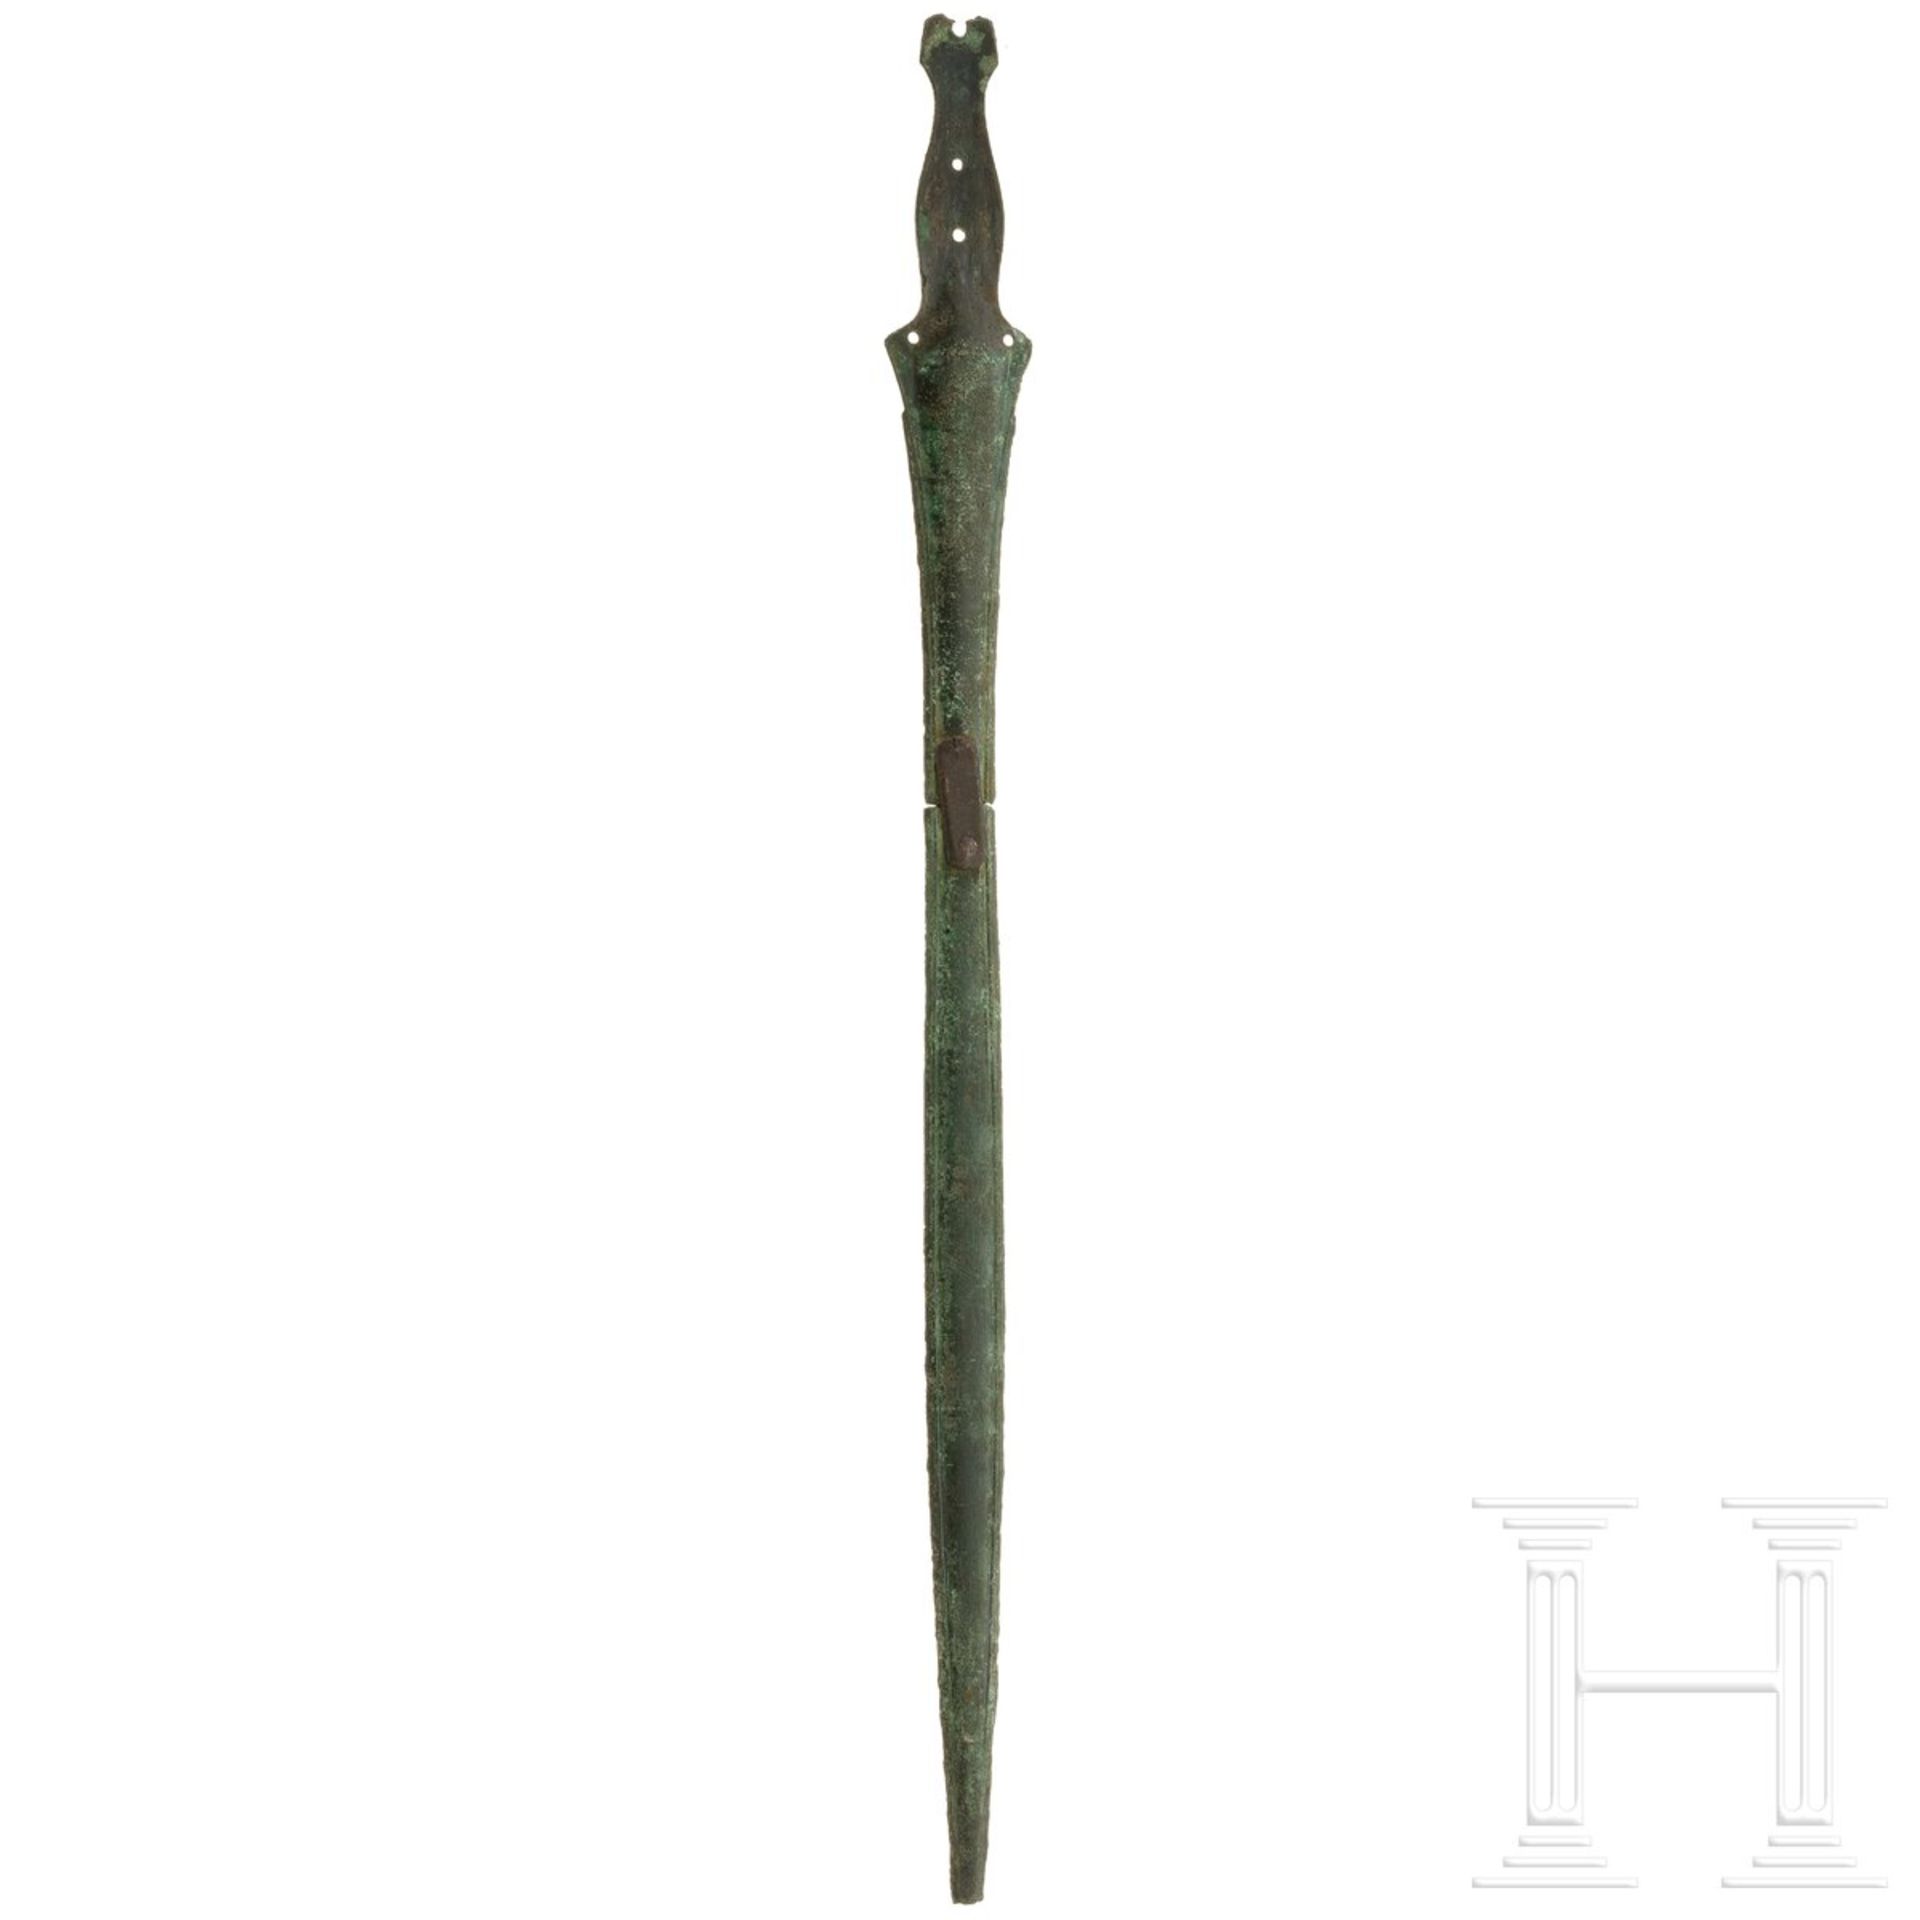 Bronzenes Griffzungenschwert vom Typ Lengenfeld (Stufe Hallstatt C), 8. Jhdt. v. Chr. - Image 2 of 3